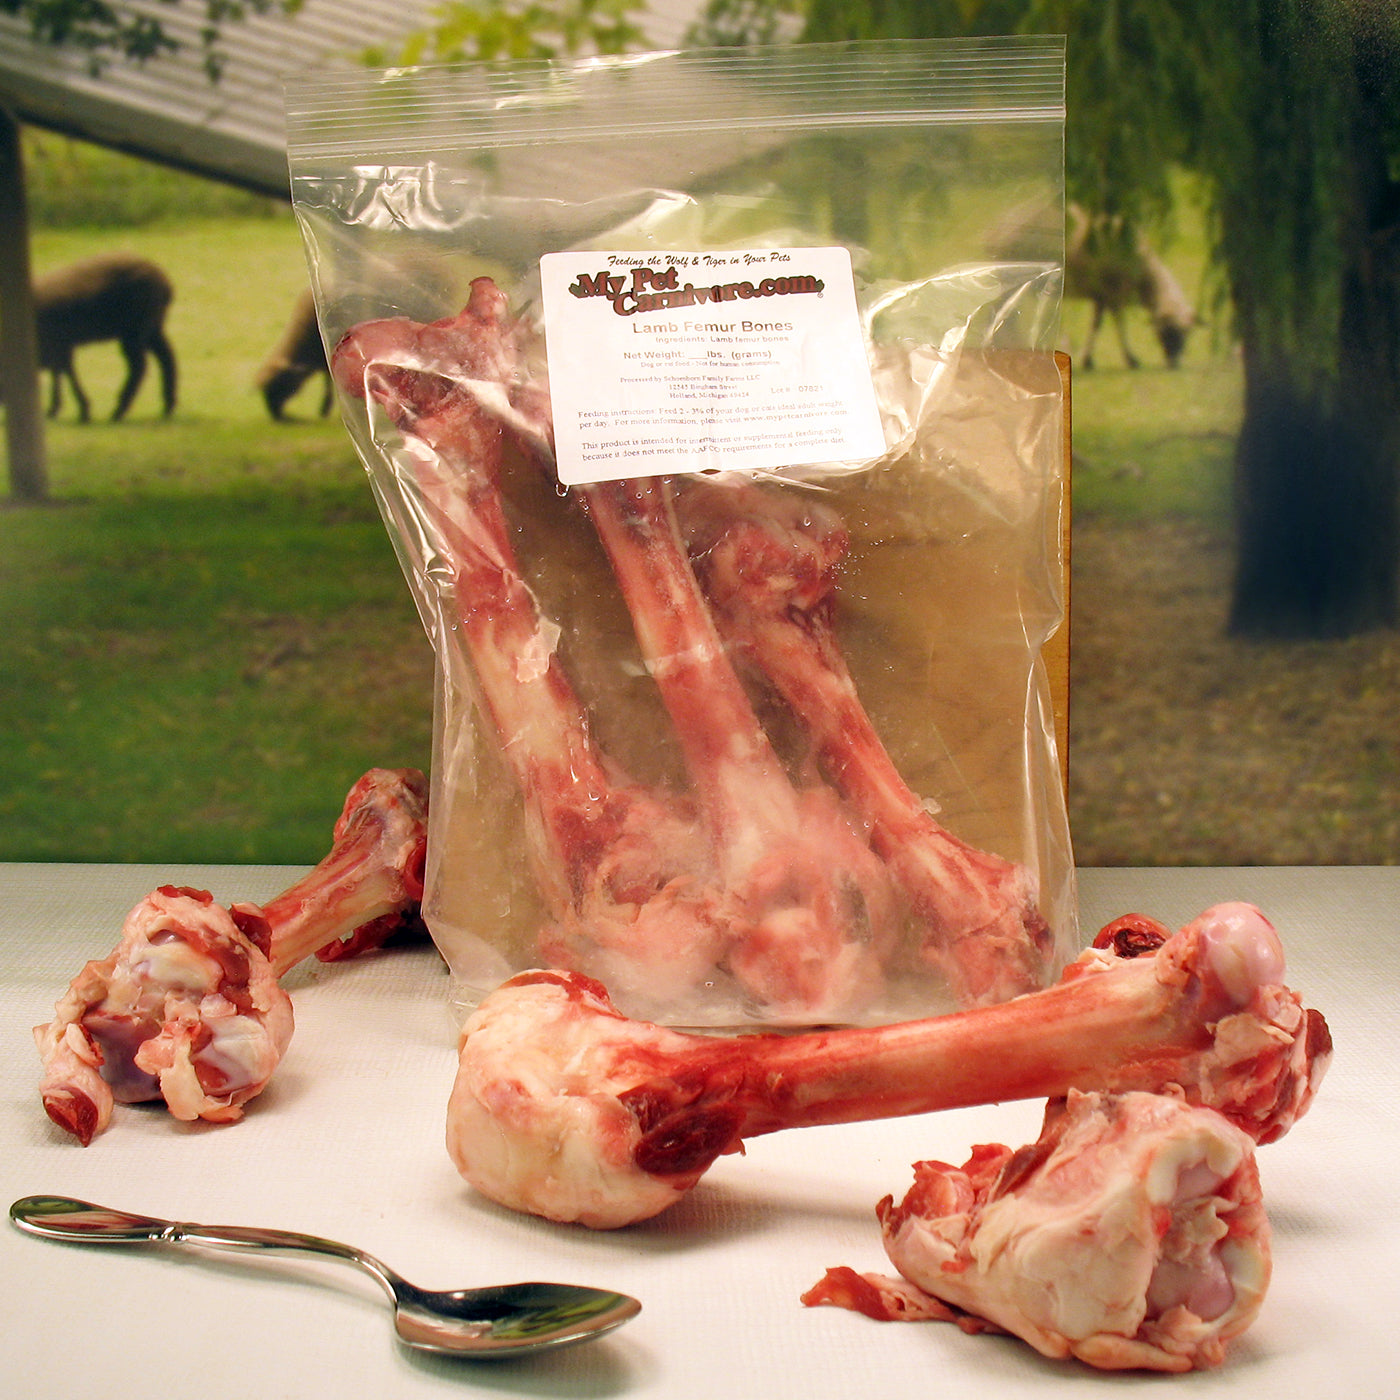 Lamb Femur Bones-3 pack